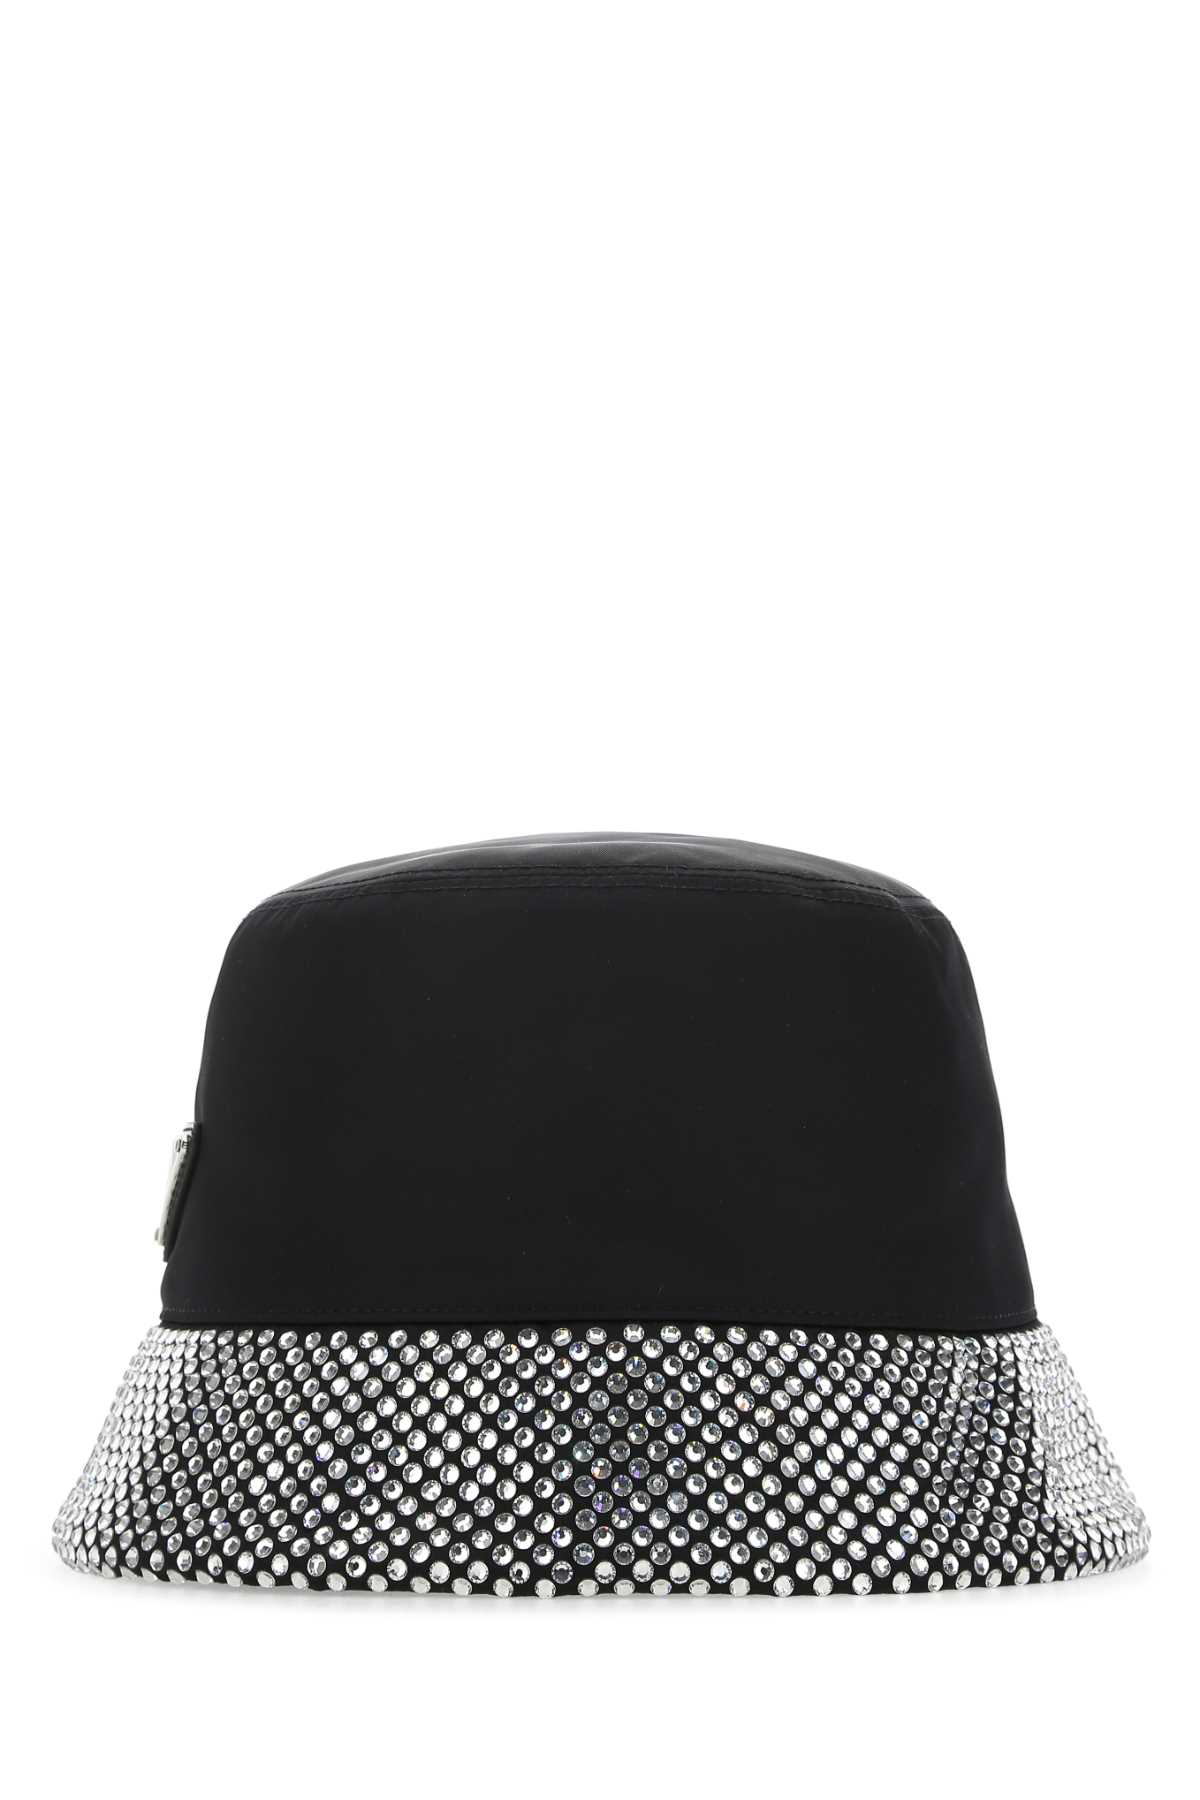 Shop Prada Black Re-nylon Hat In F0t7o